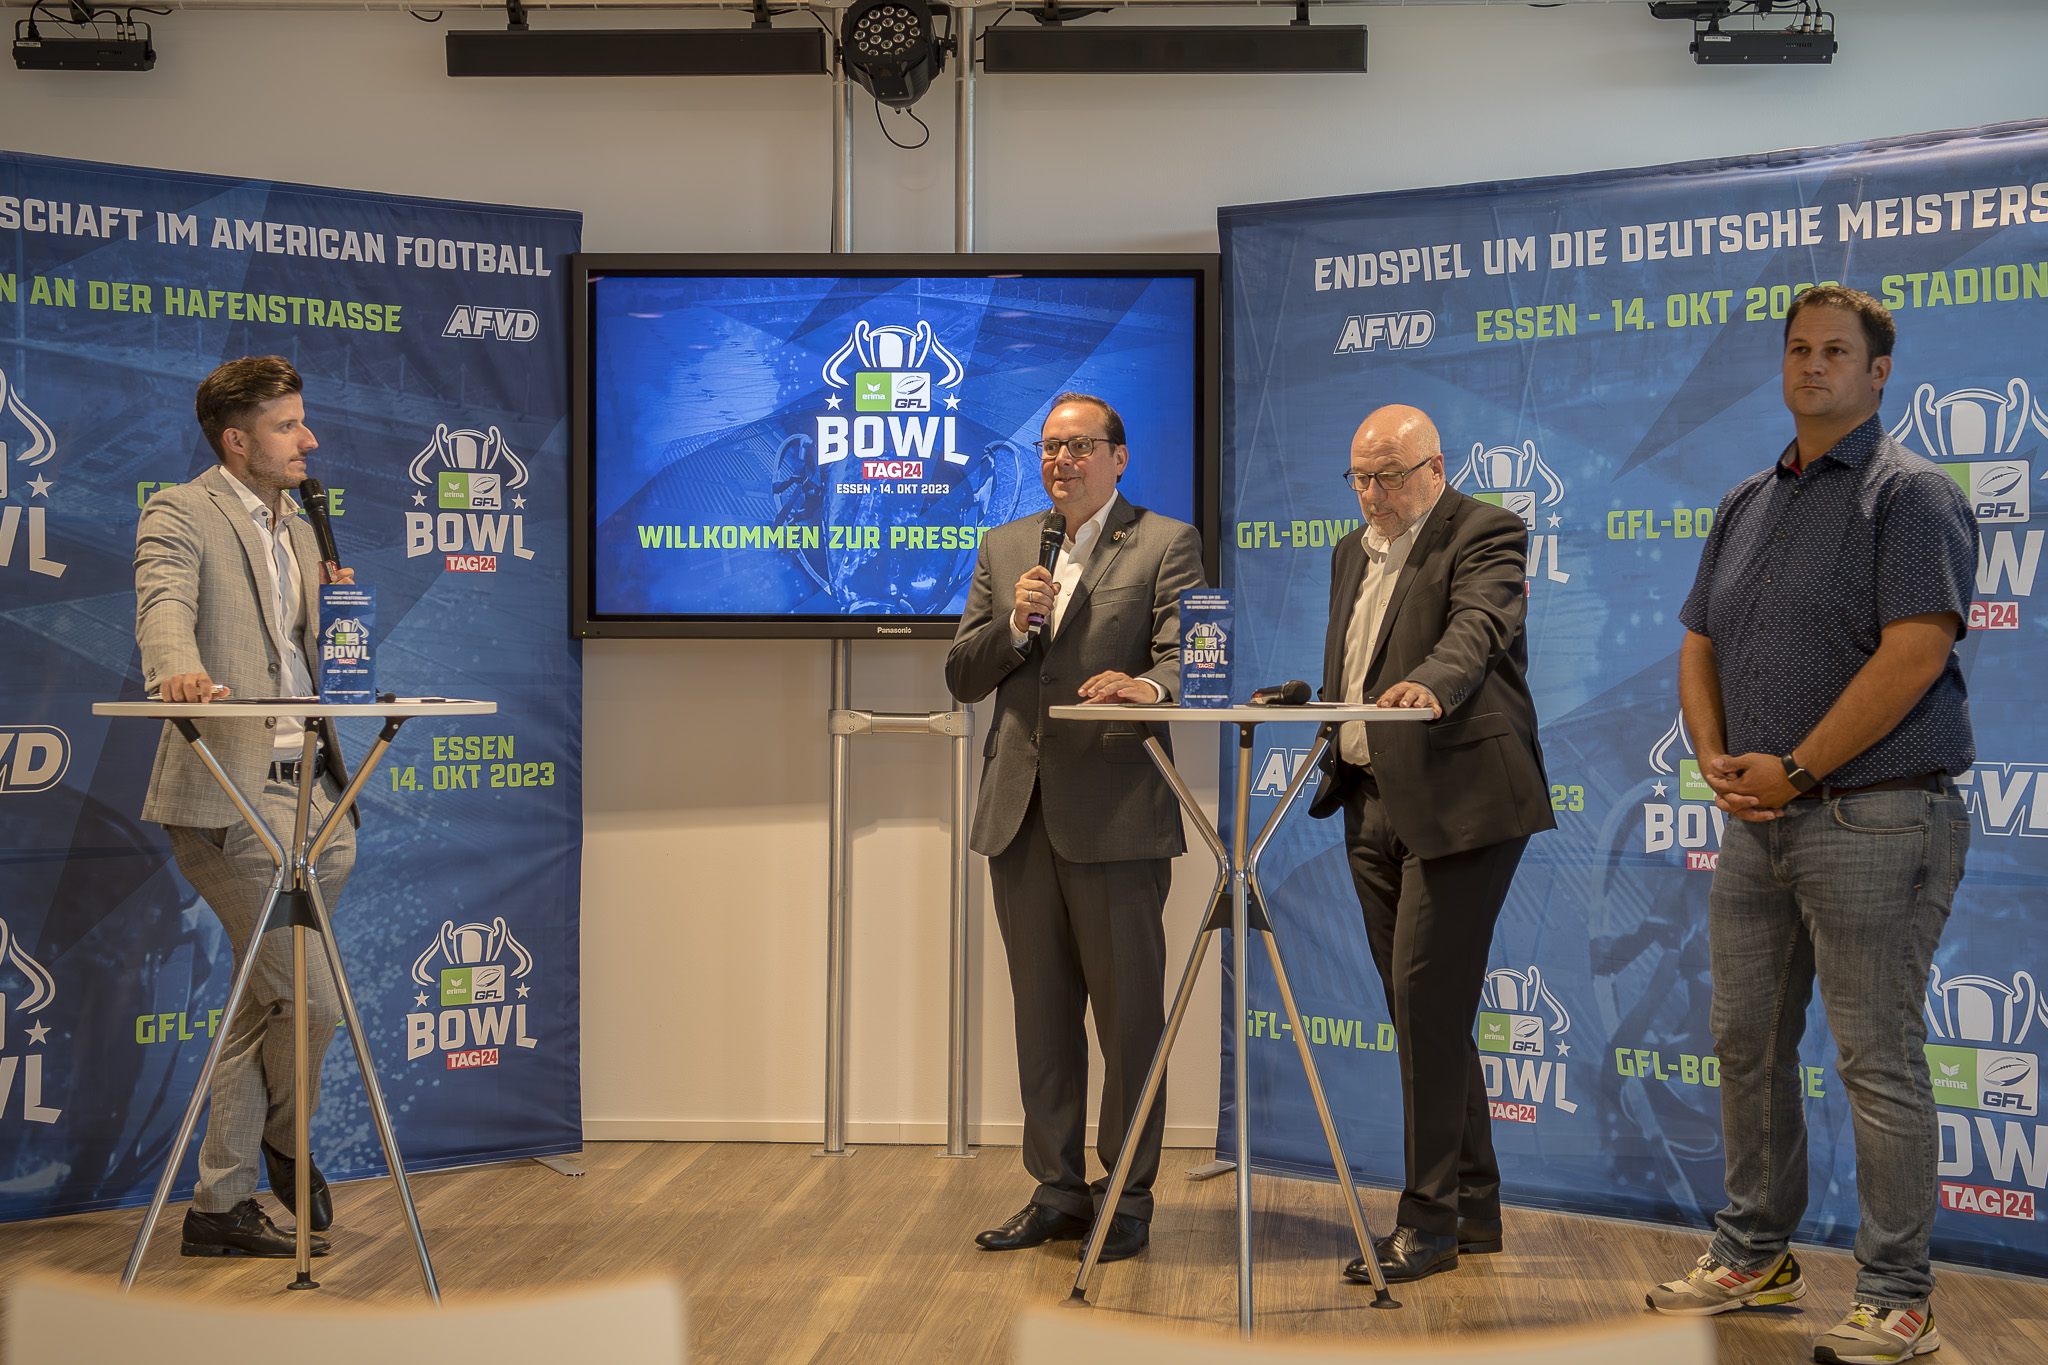 Pressekonferenz zum GFL Bowl in Essen (v.l.n.r. Dennis Schulz, Thomas Kufen, Dirk Miklikowski, Markus Würtele) - Foto: Oliver Jungnitsch